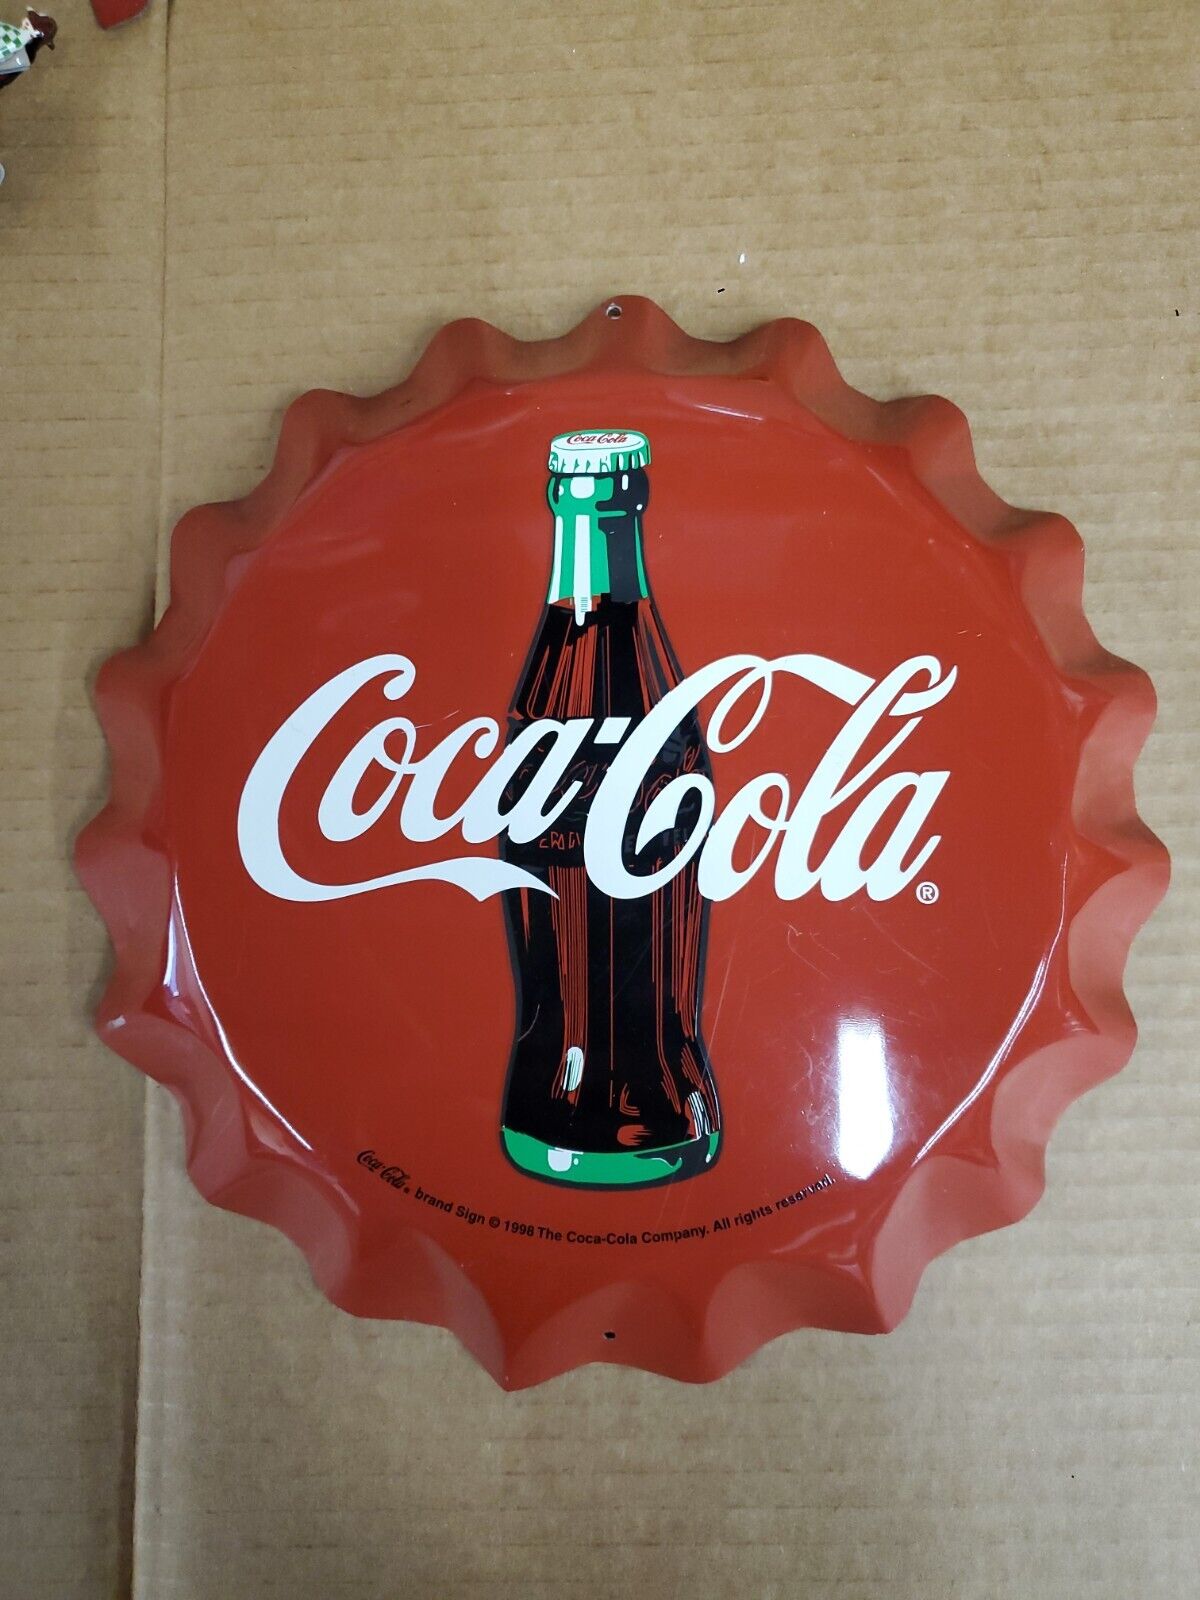 Vintage Coca cola Bottle Cap Sign A